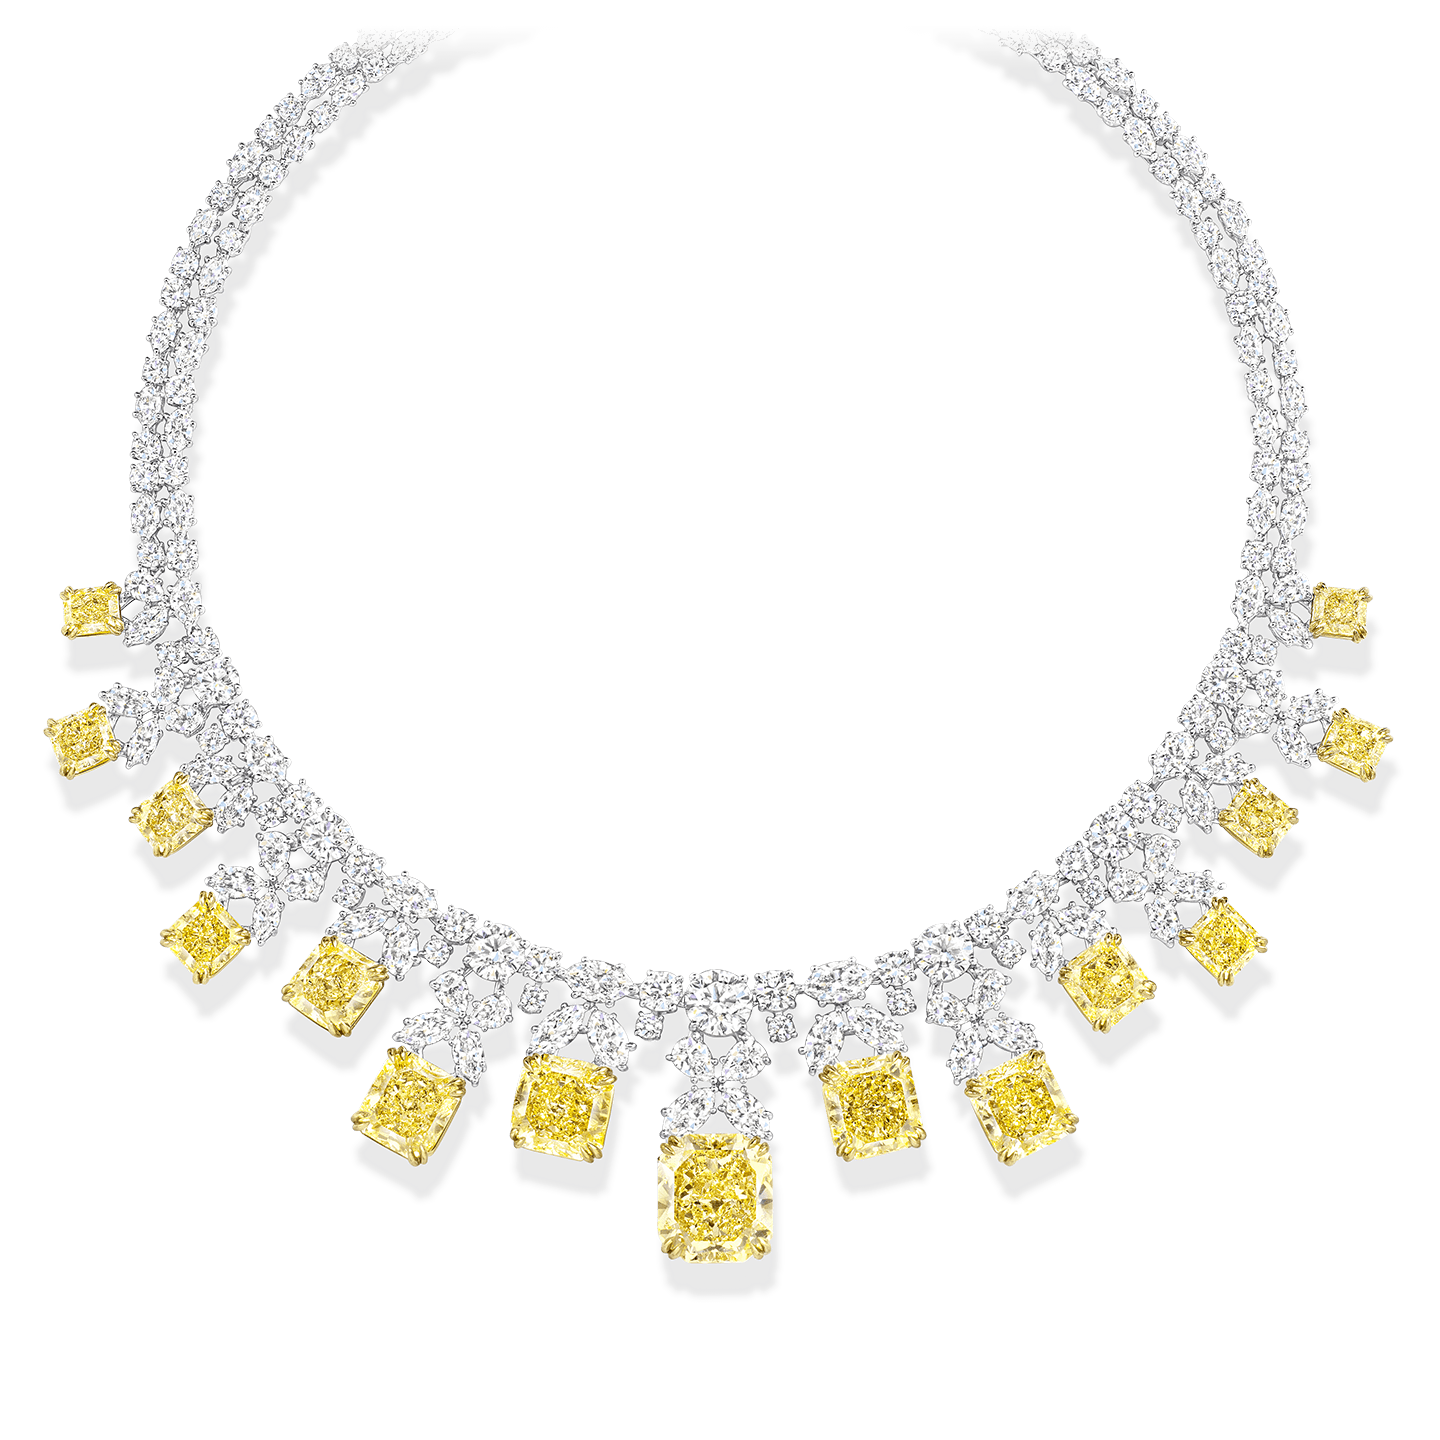 15 diamants jaunes fancy taille radiant pesant un total d'environ 53,50 carats avec 186 diamants marquises, taille poire et brillant pesant un total d'environ 41,47 carats, sertis sur platine et or jaune 18 carats.